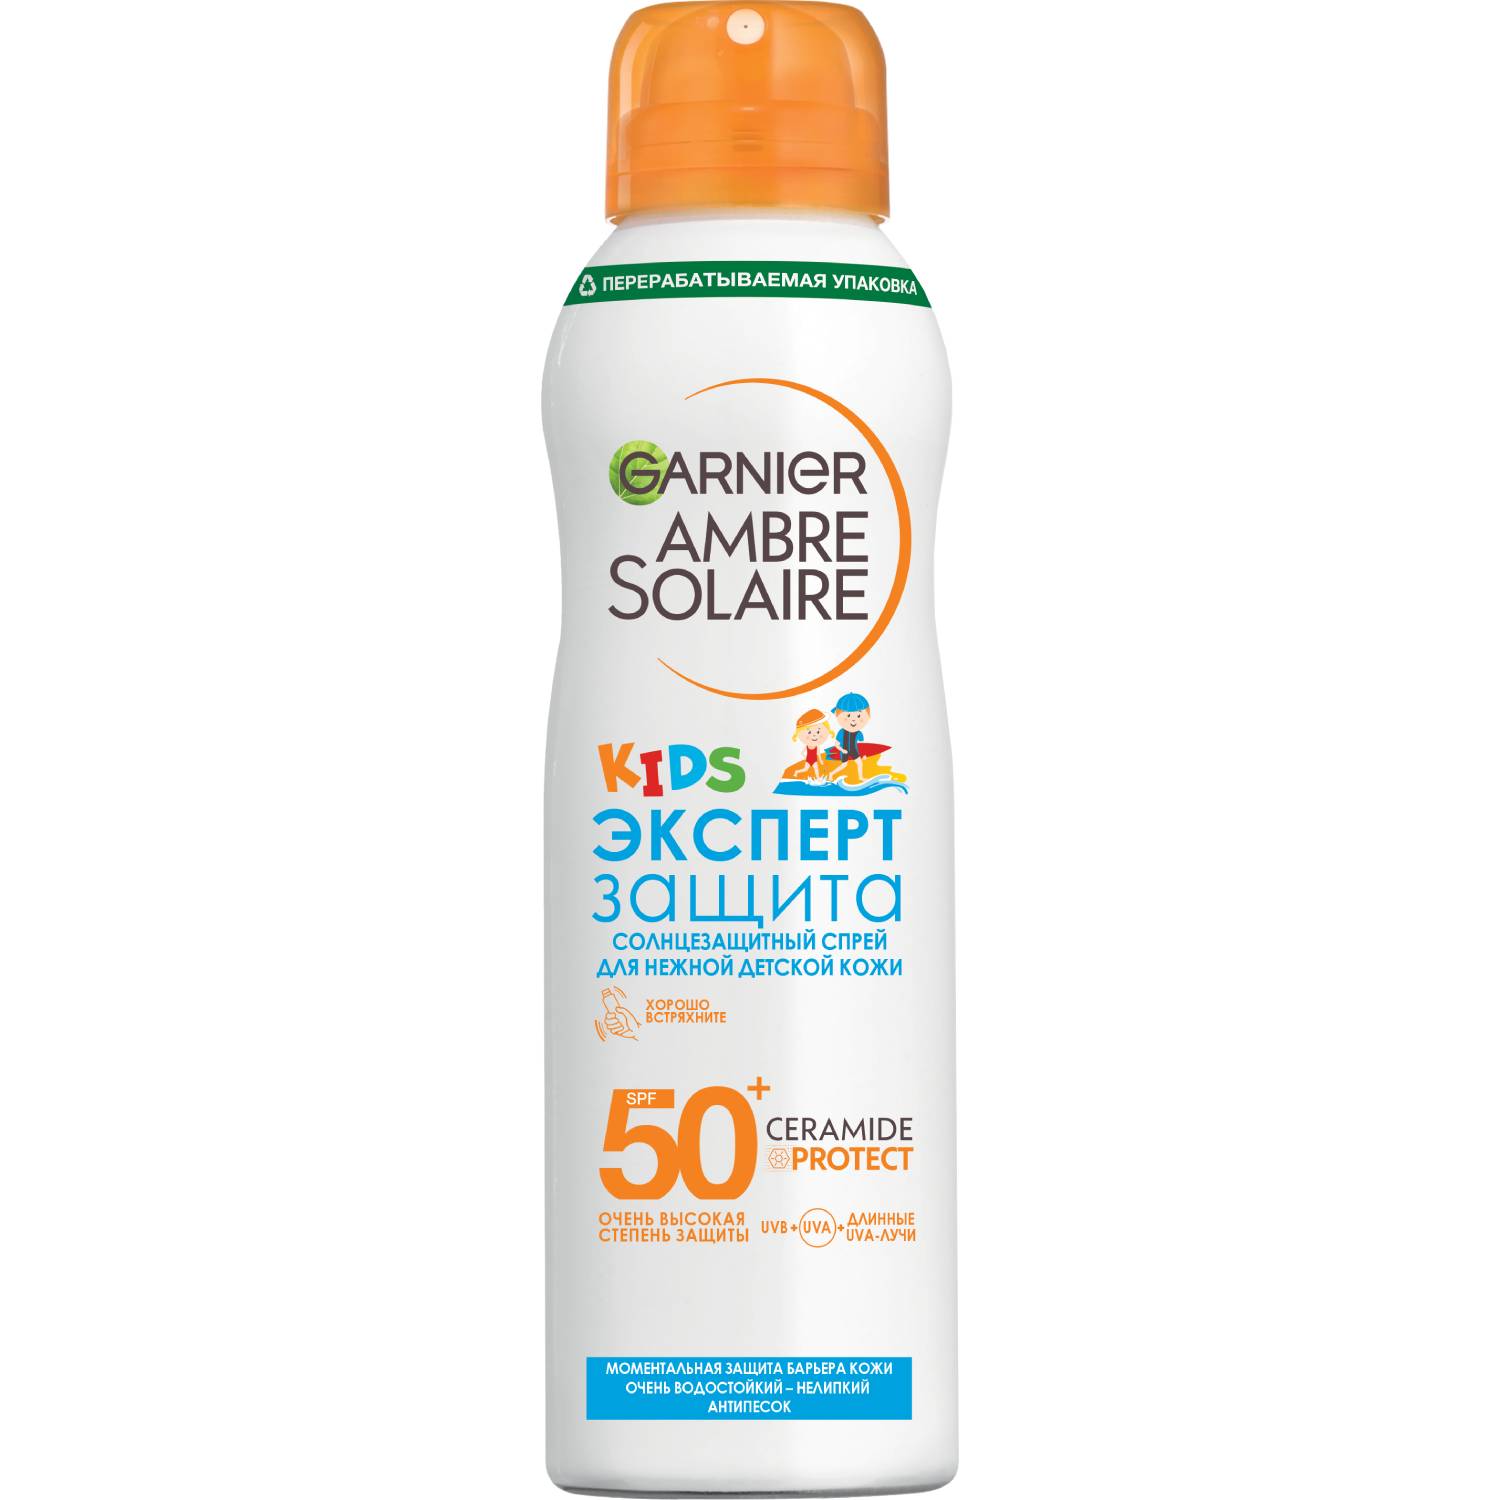 Garnier Солнцезащитный водостойкий сухой спрей для детей Эксперт защита SPF50+ антипесок, 150 мл (Garnier, Amber solaire)